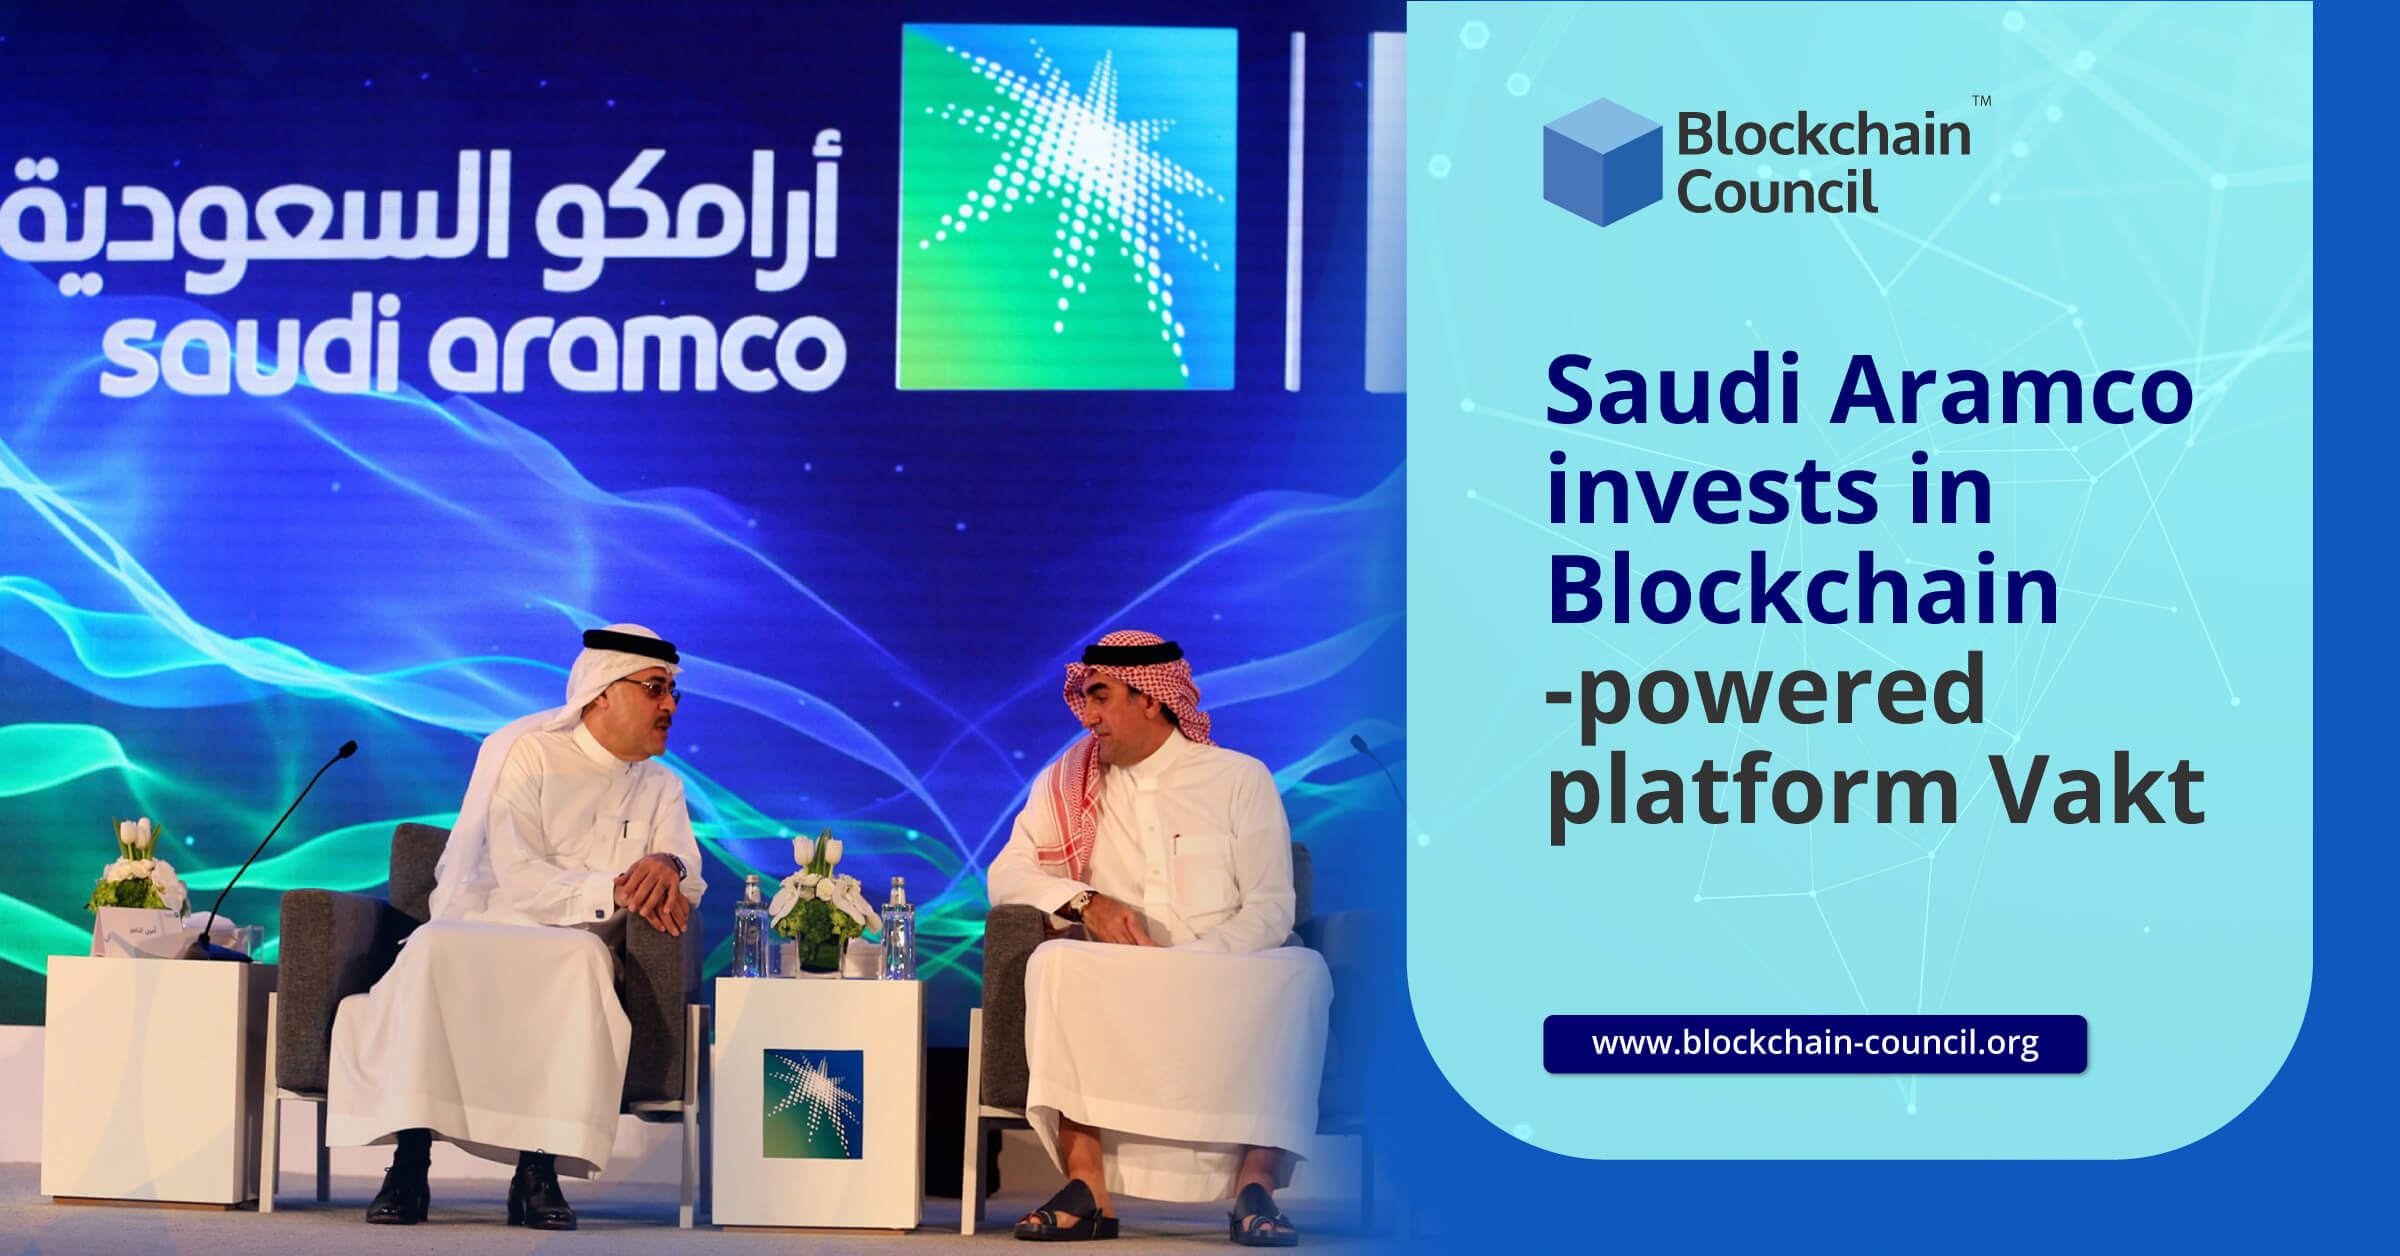 Saudi Aramco invests in Blockchain-powered platform Vakt